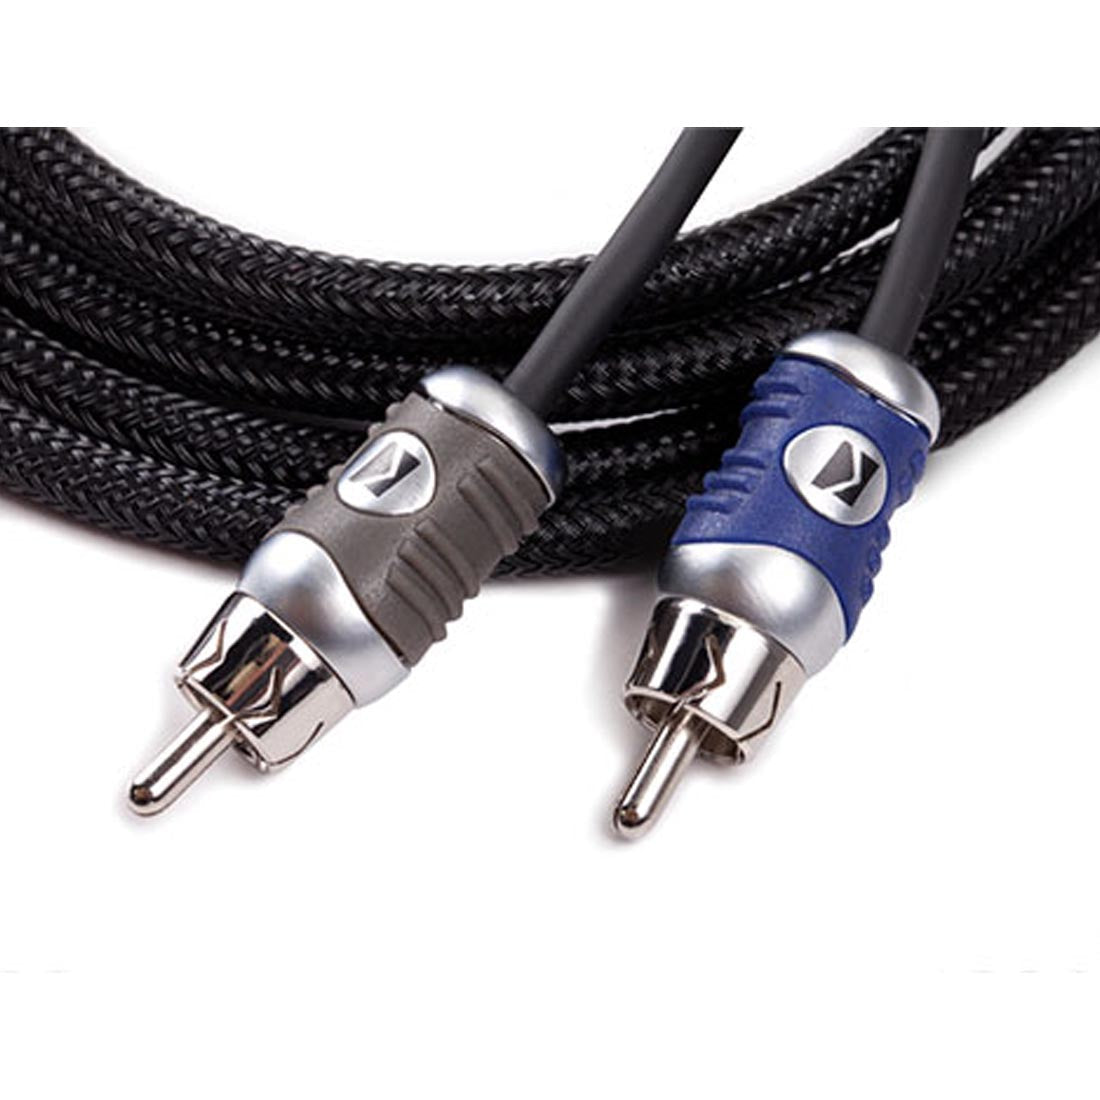 Kicker Q Series Signal Cable K-Grip connectors